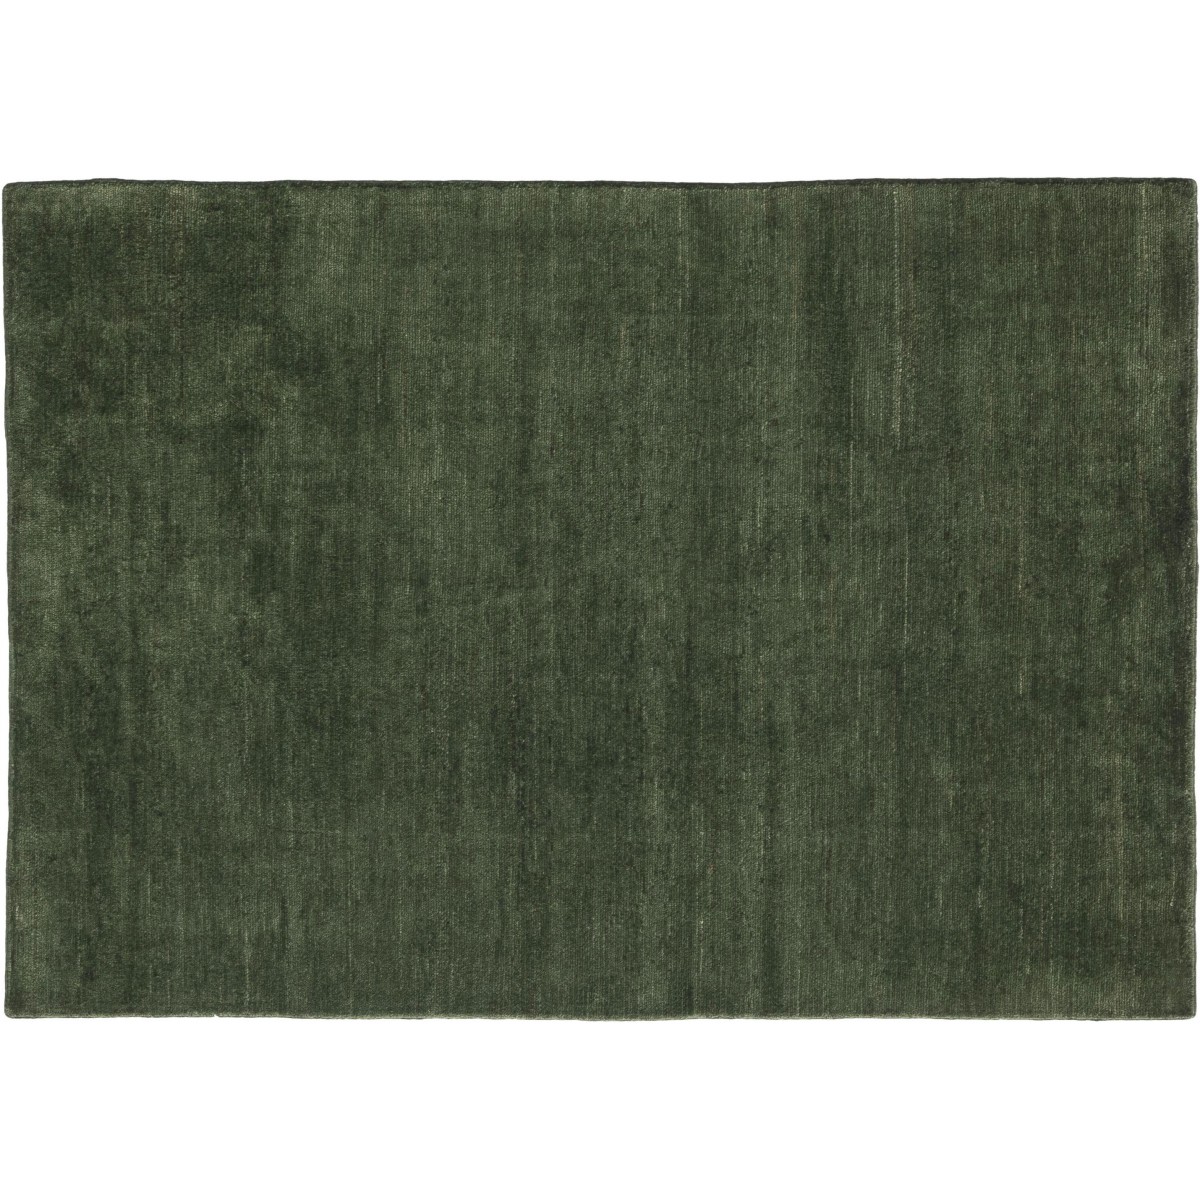 170x240cm - moss - tapis Persian Colors